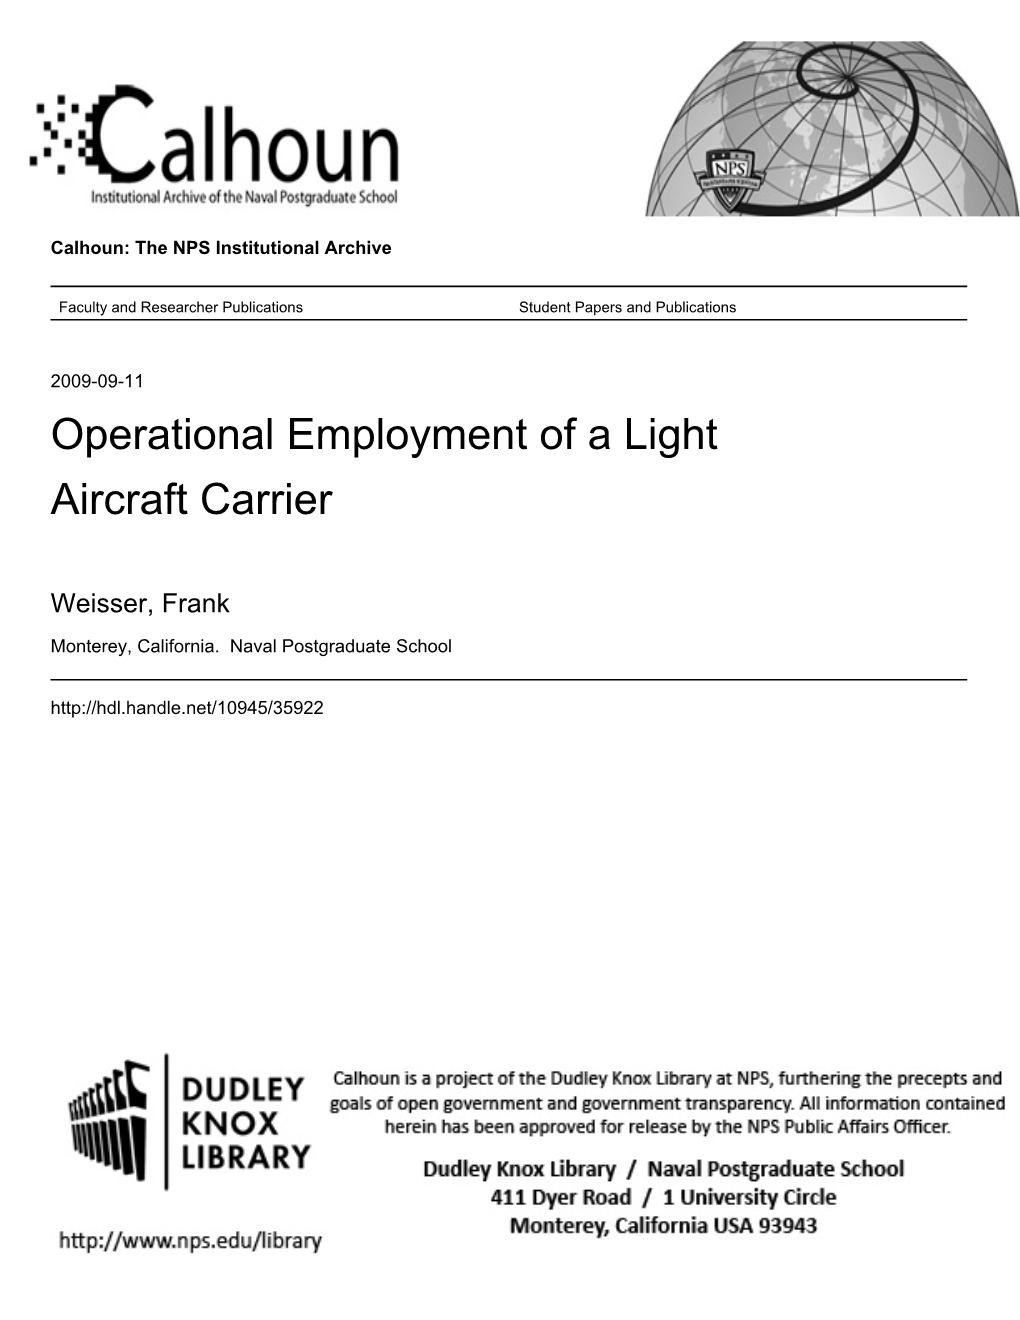 Operational Employment of a Light Aircraft Carrier